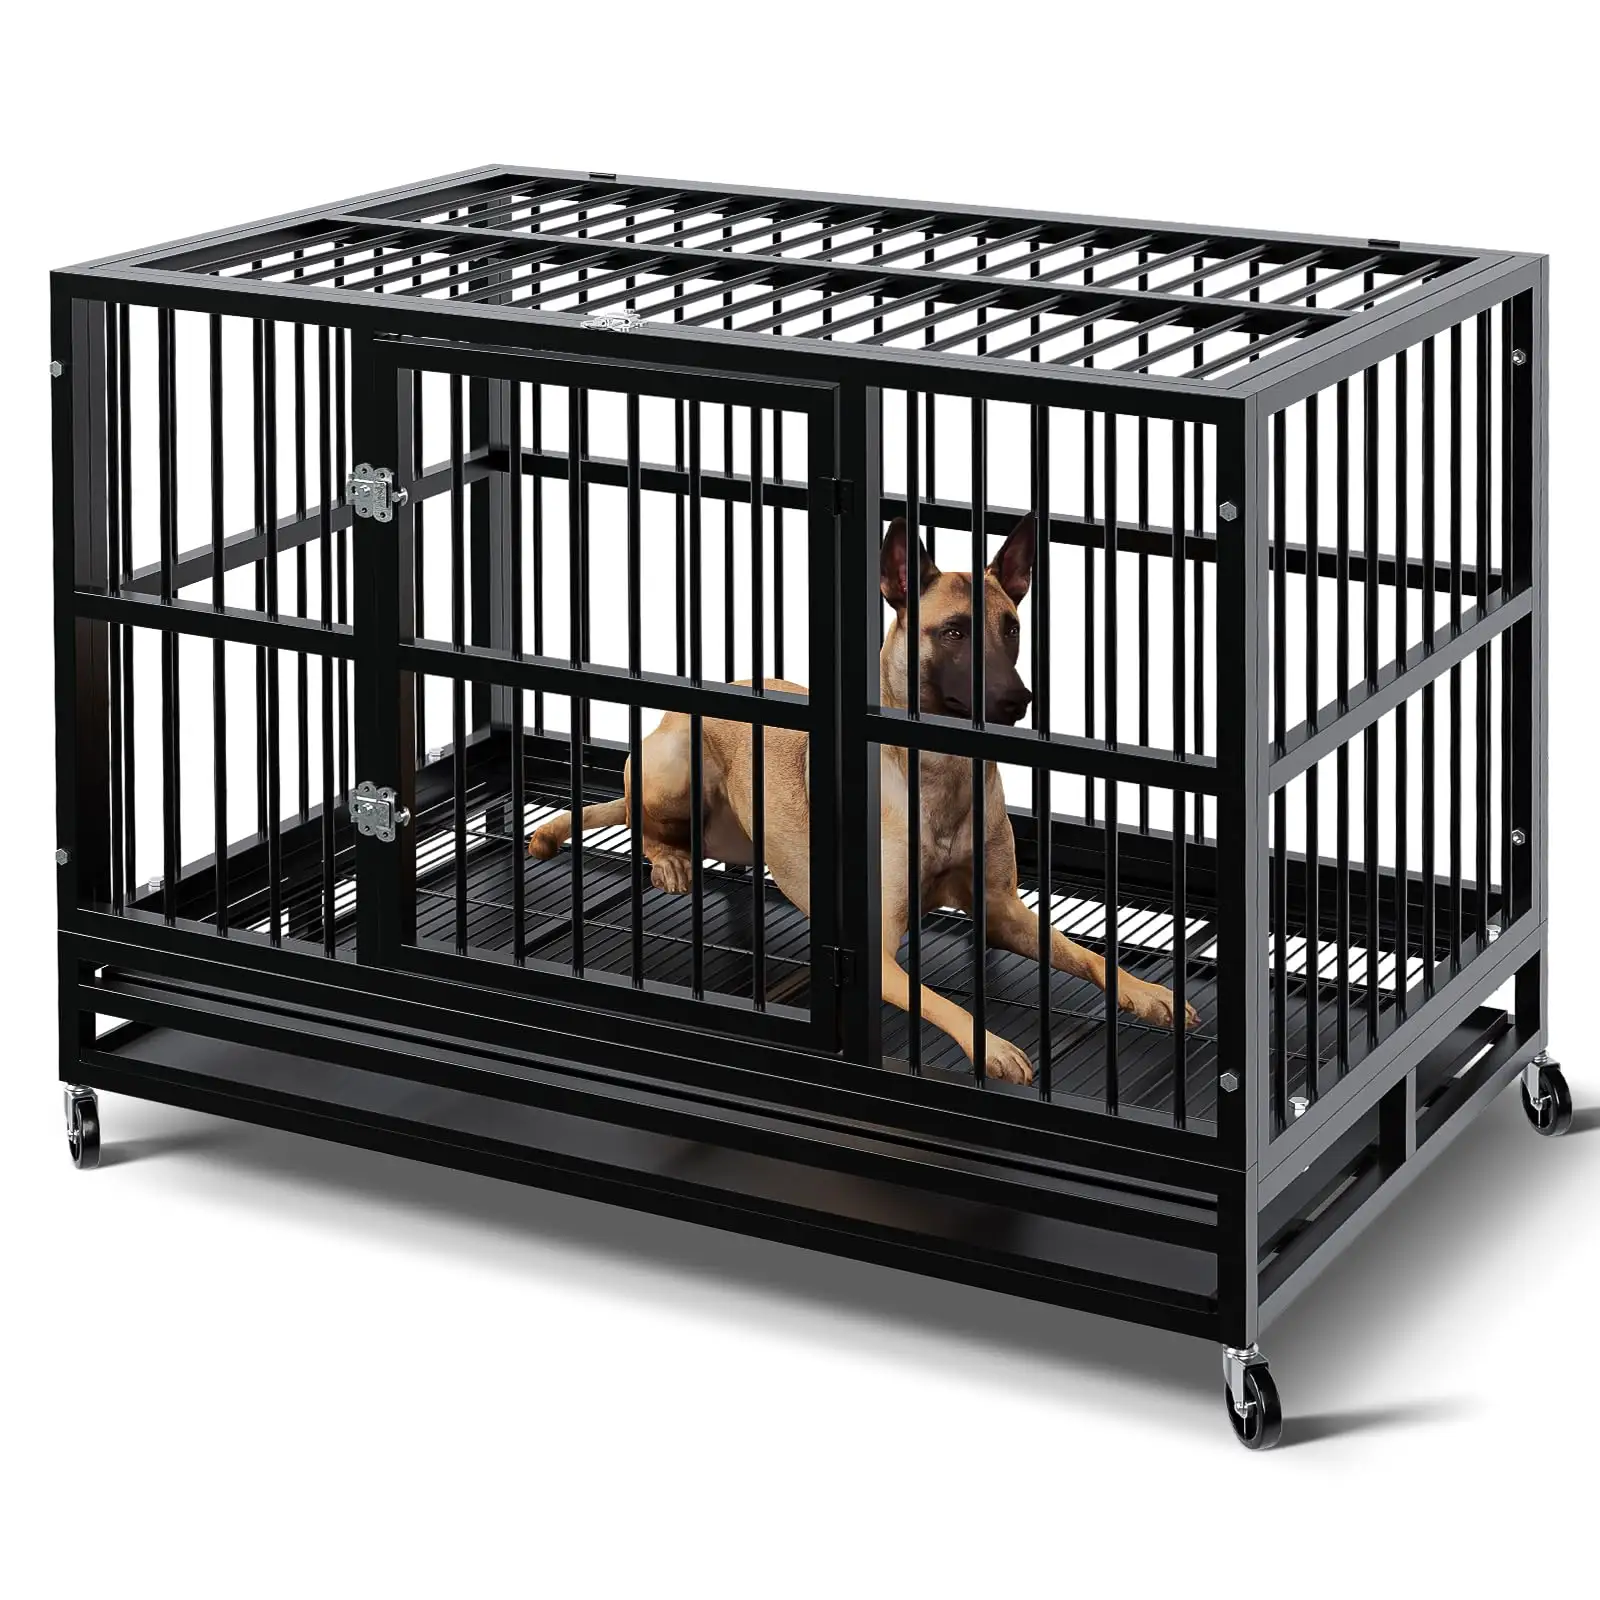 Nouveau Type empilable chien caisse maison Anti-mâcher roues chien Cage chenils en métal avec roulettes pour chiens